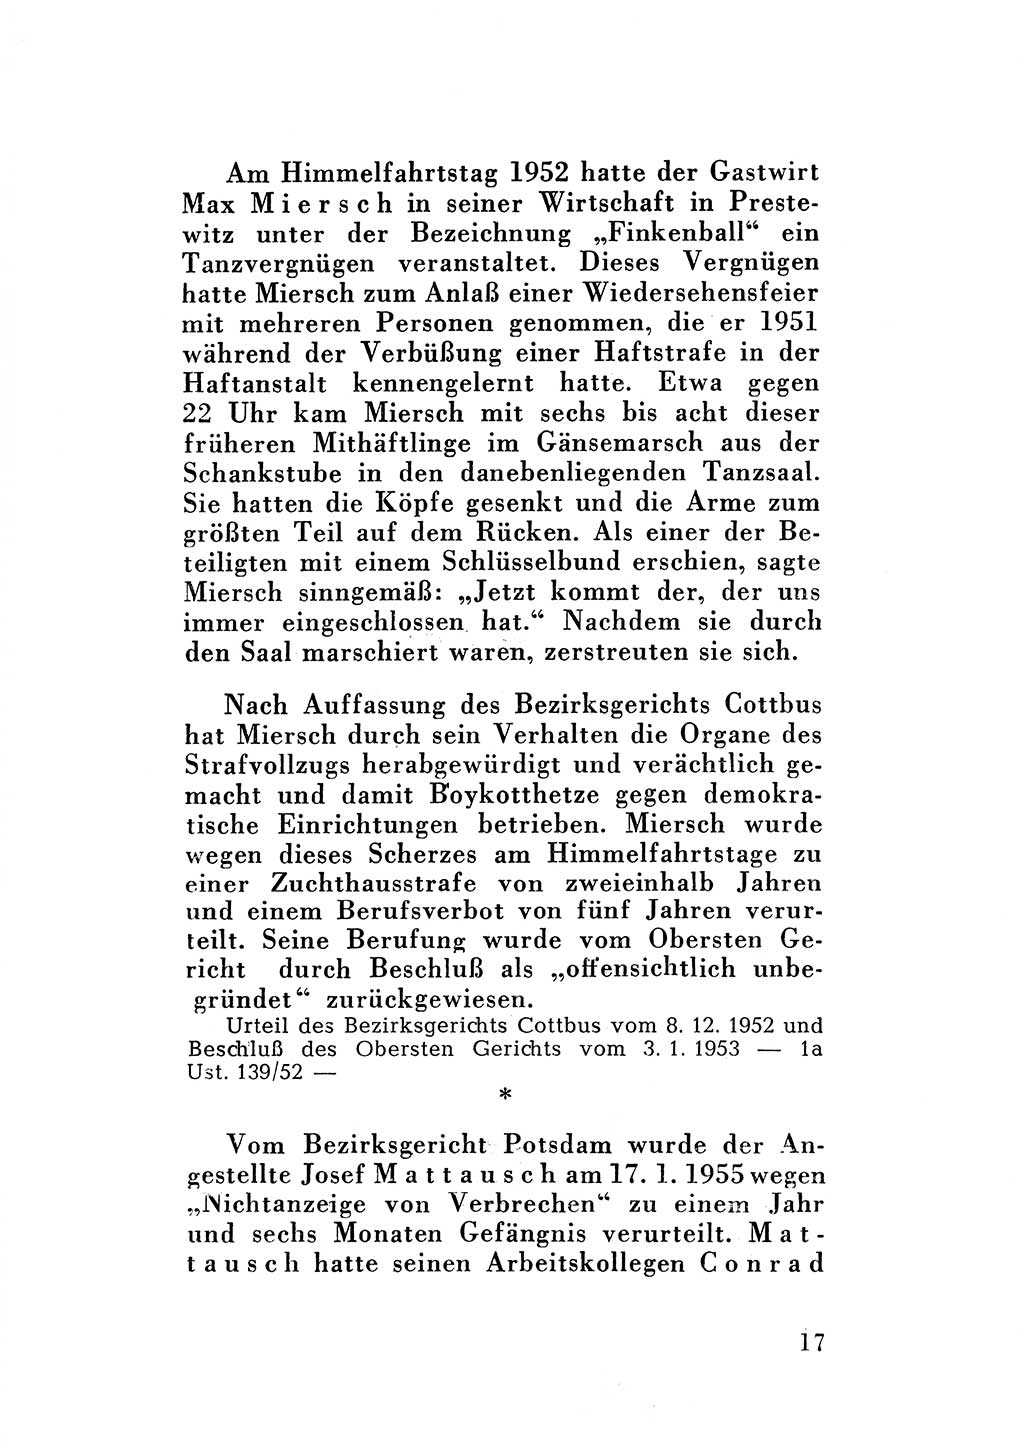 Katalog des Unrechts, Untersuchungsausschuß Freiheitlicher Juristen (UfJ) [Bundesrepublik Deutschland (BRD)] 1956, Seite 17 (Kat. UnR. UfJ BRD 1956, S. 17)